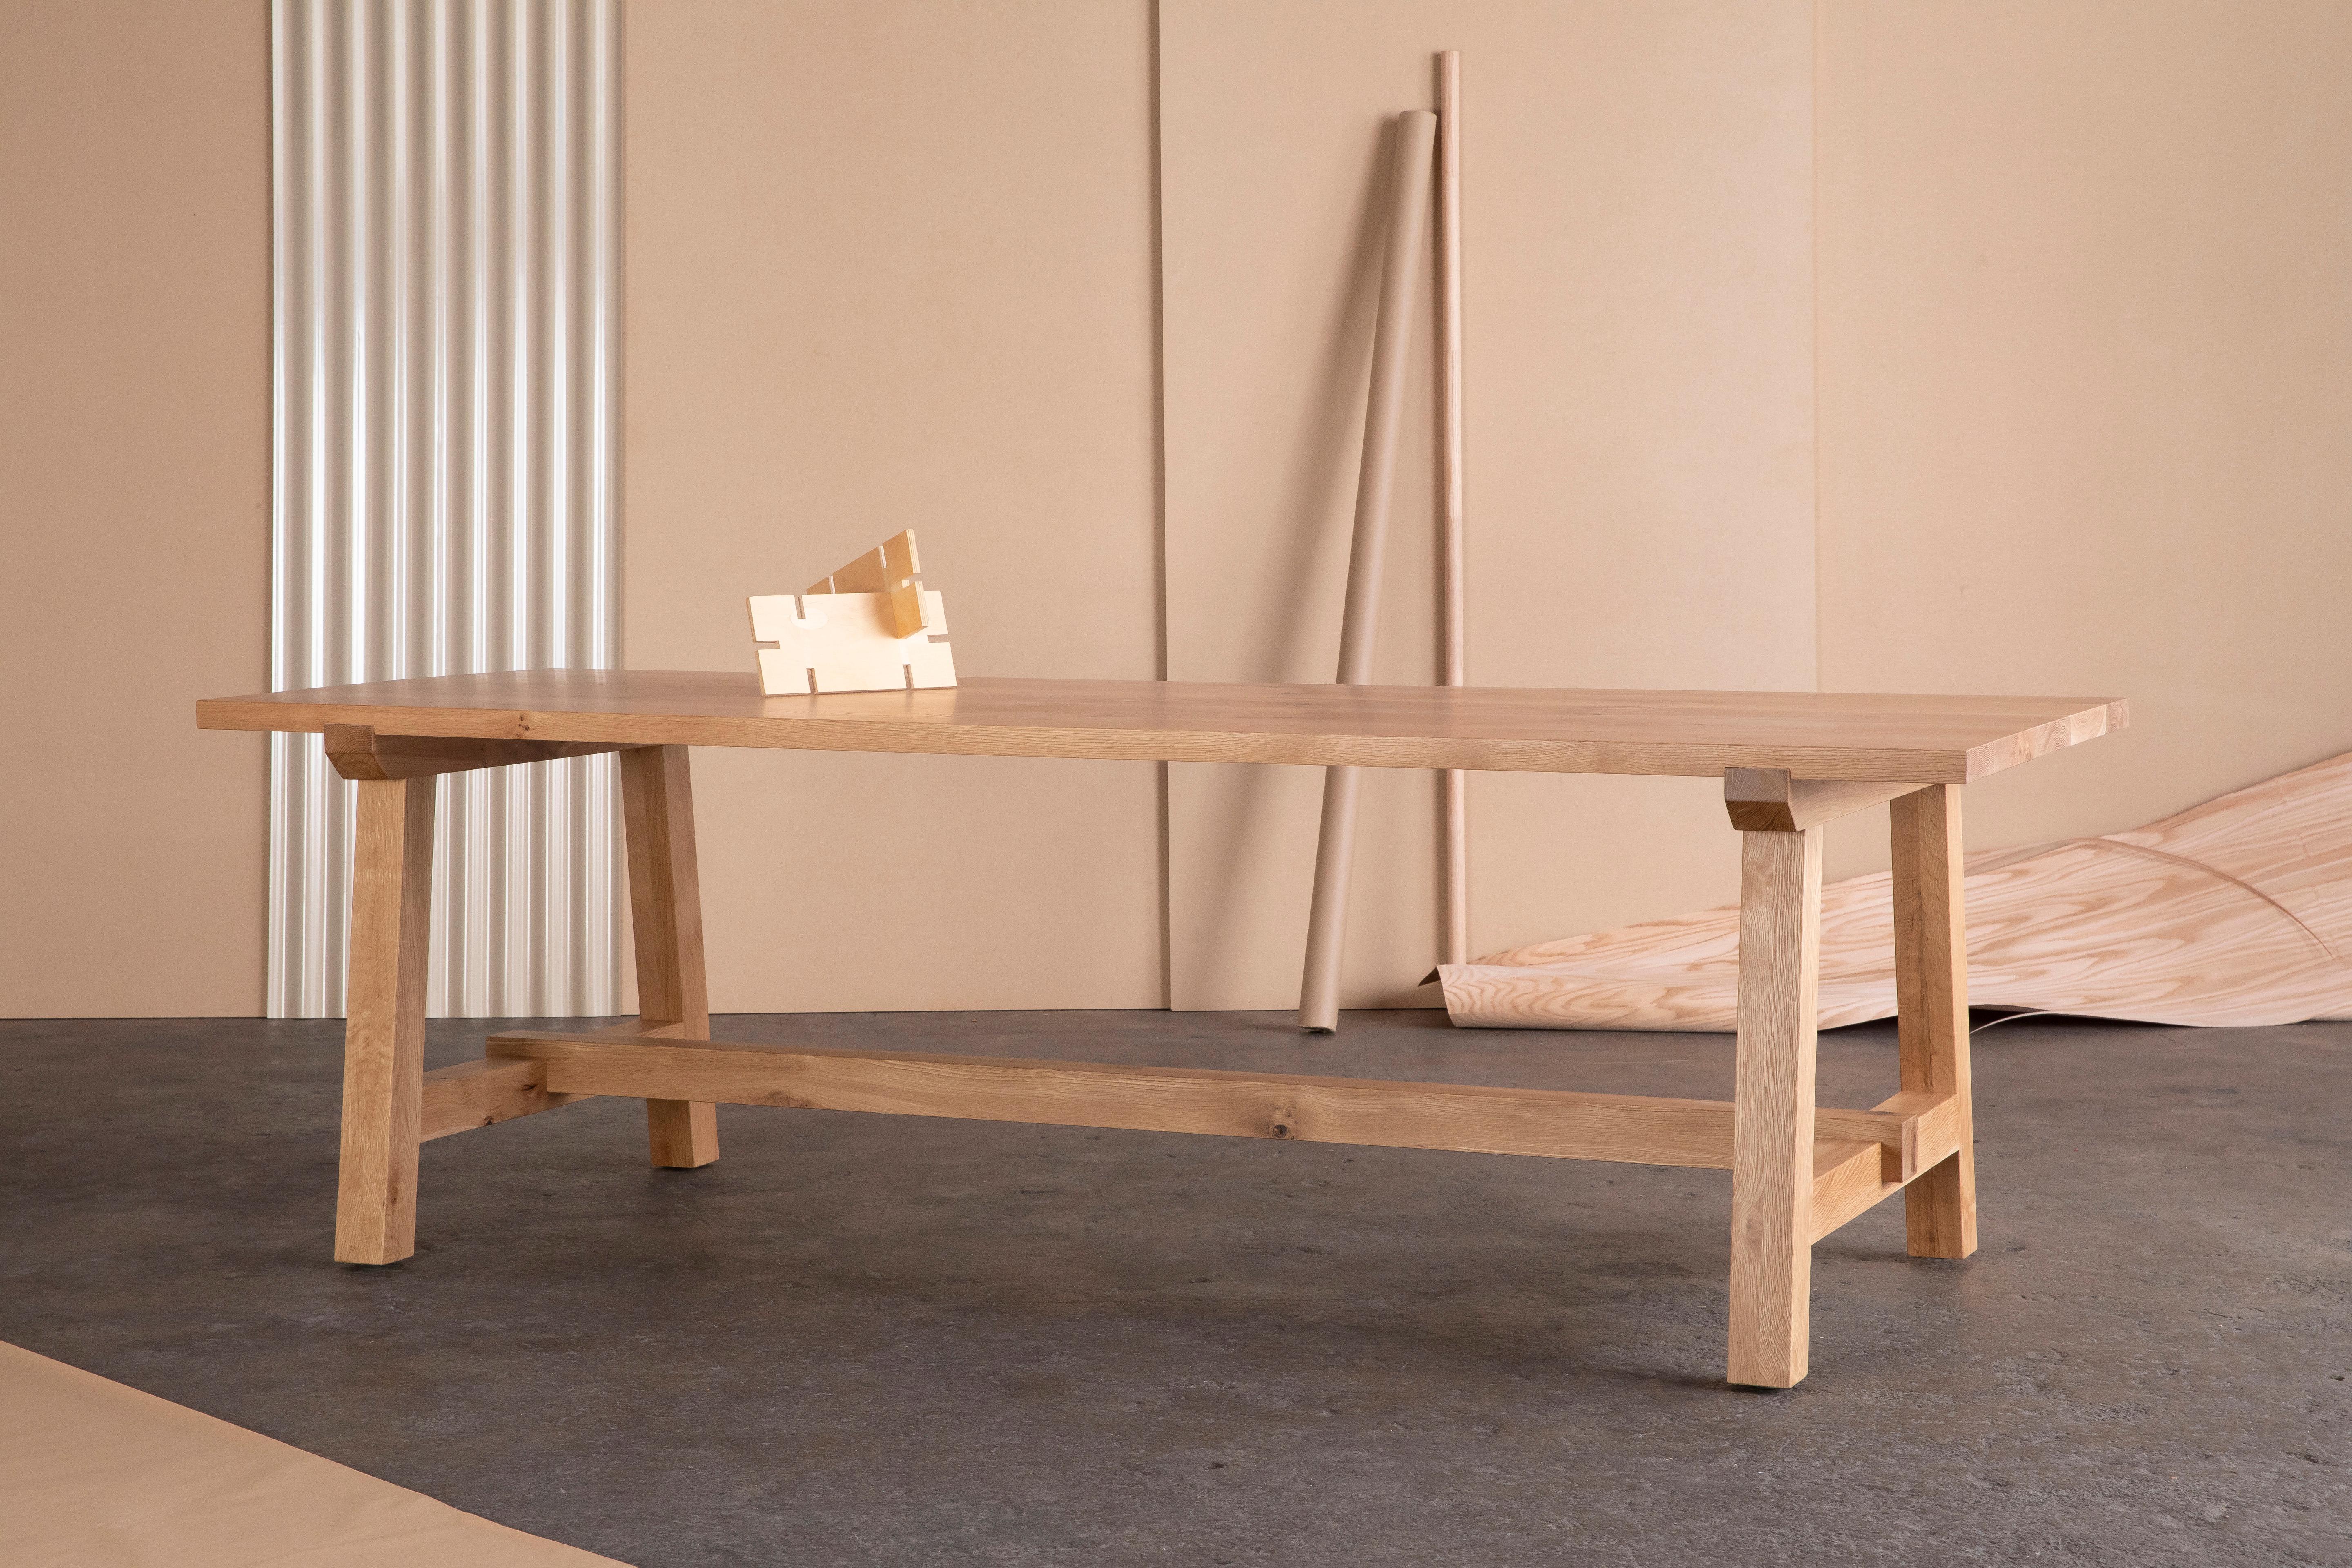 Der Winston-Esstisch aus Nussbaumholz hat einen zeitlosen Look, der sich gut in traditionelle, rustikale und moderne Einrichtungen einfügt.

Das Gestell wird von einer stabilen Massivholzstrebe getragen und definiert den Stil und die Funktion dieses